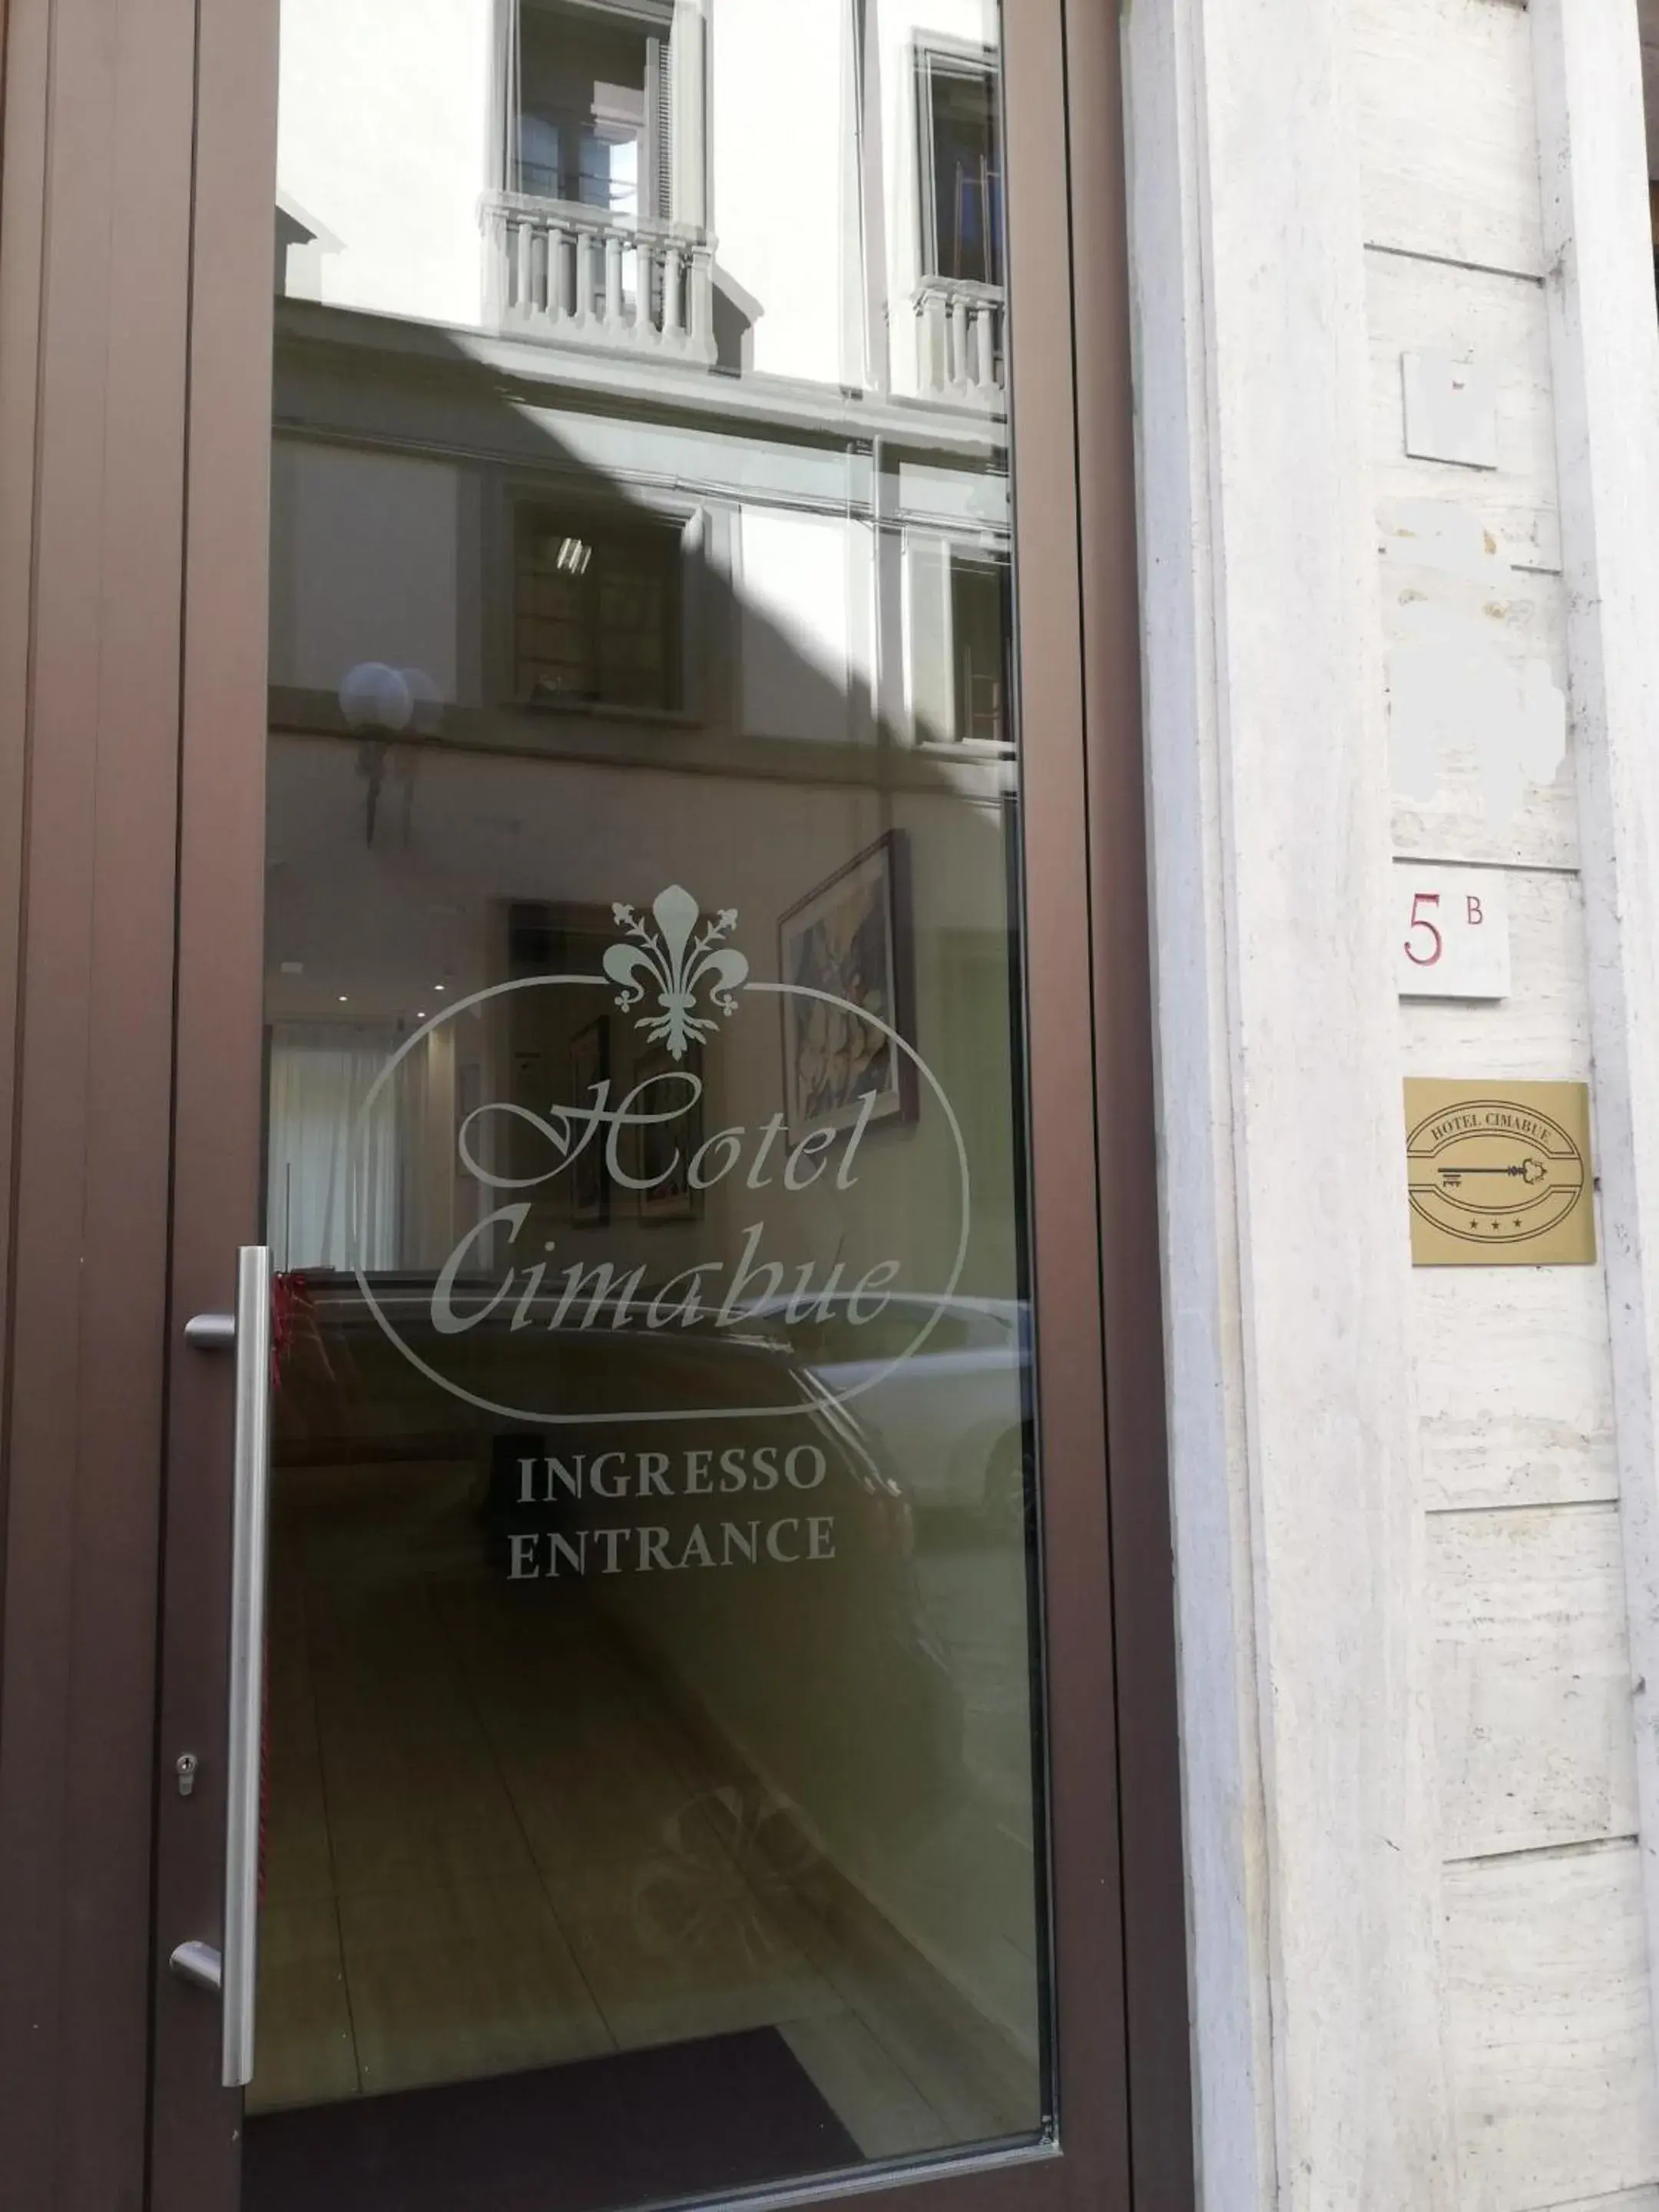 Facade/entrance in Hotel Cimabue